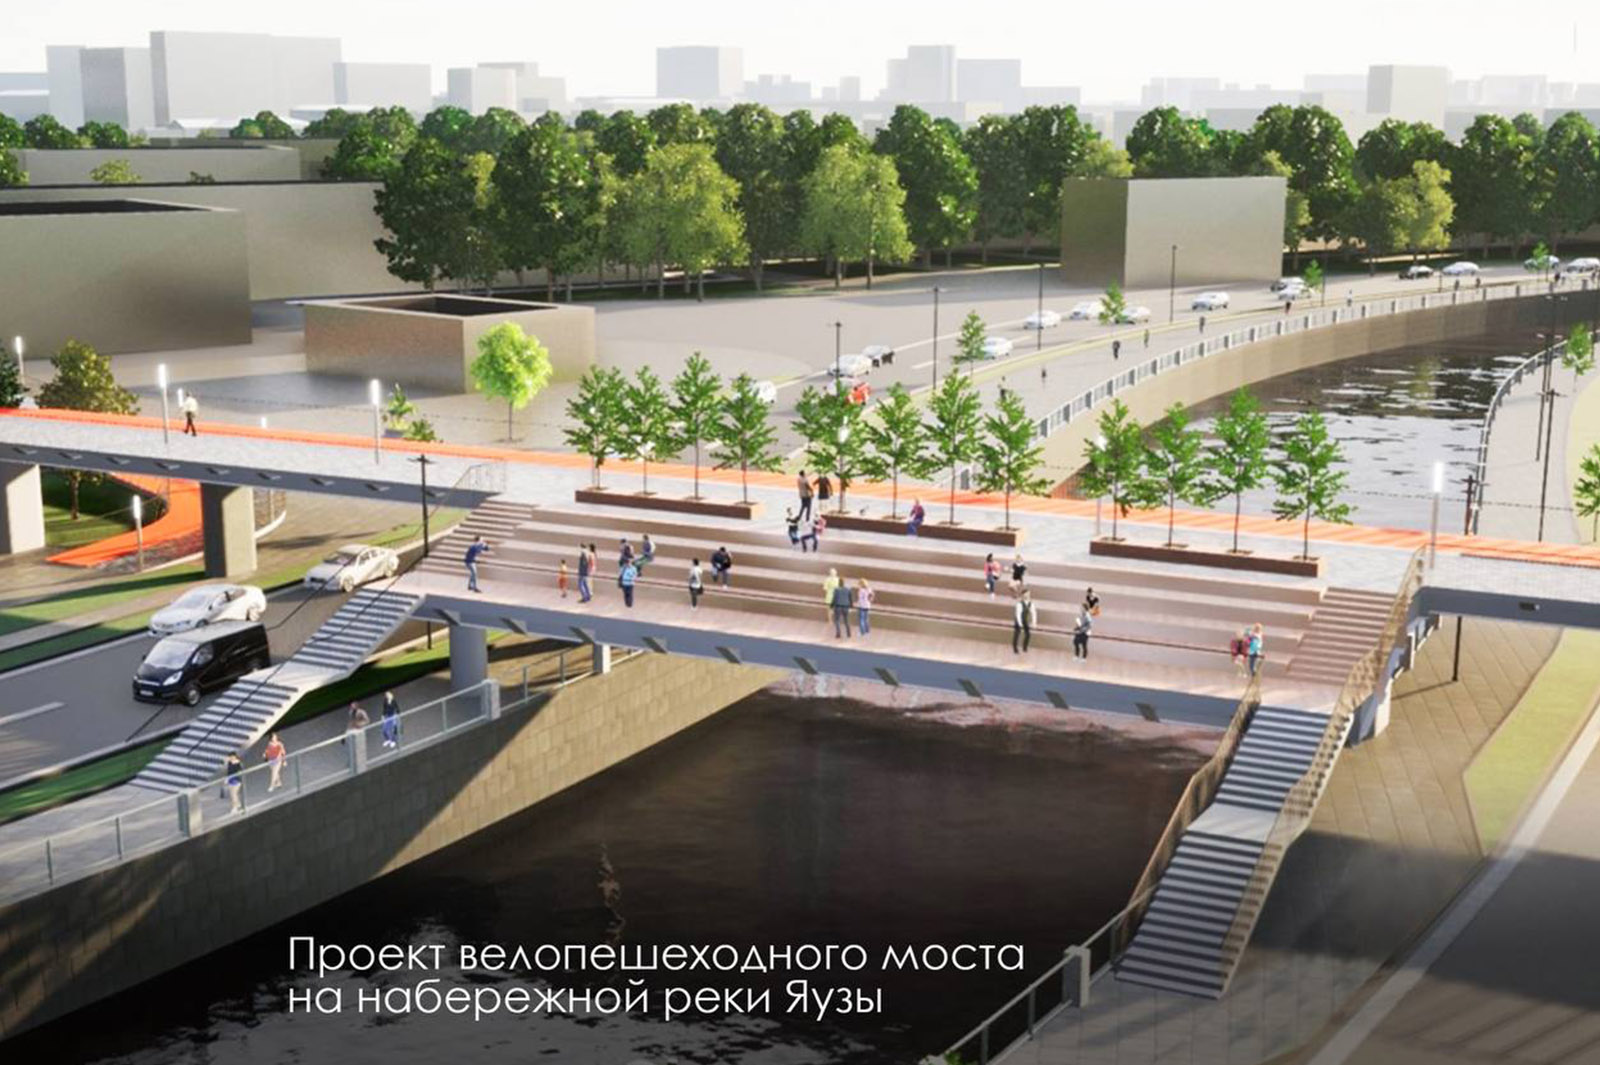 Новый велопешеходный мост через Яузу свяжет два района Москвы